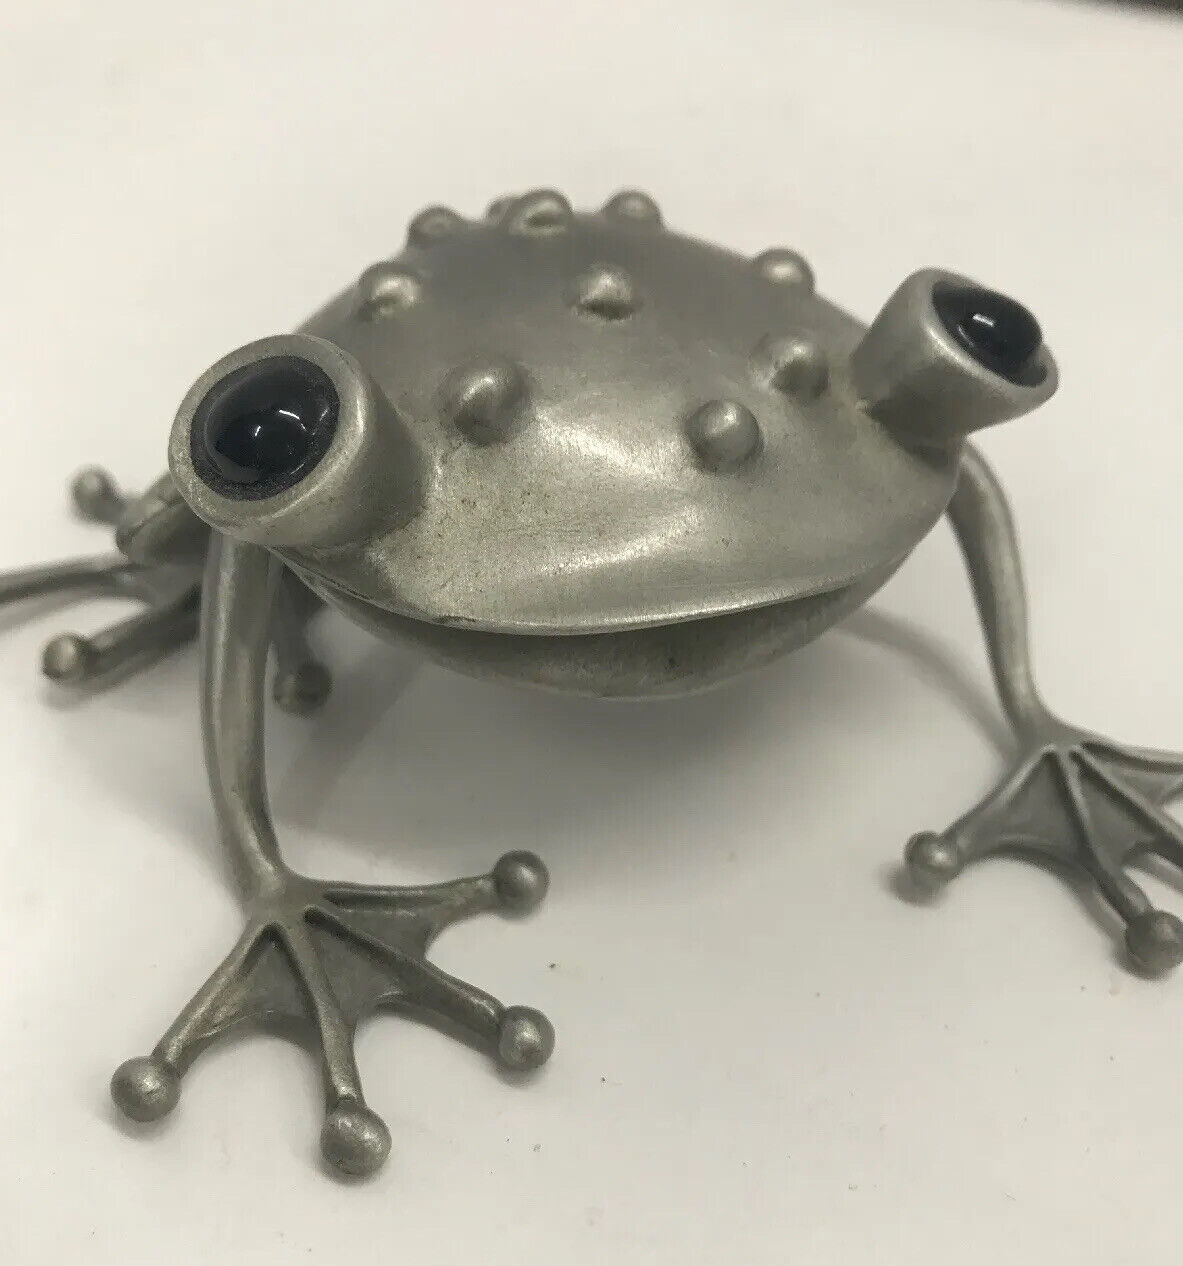 Frog Figurine Fine Pewter Sculpture Stepper Smiling Signed Vintage 4”x3.5”x1.5”